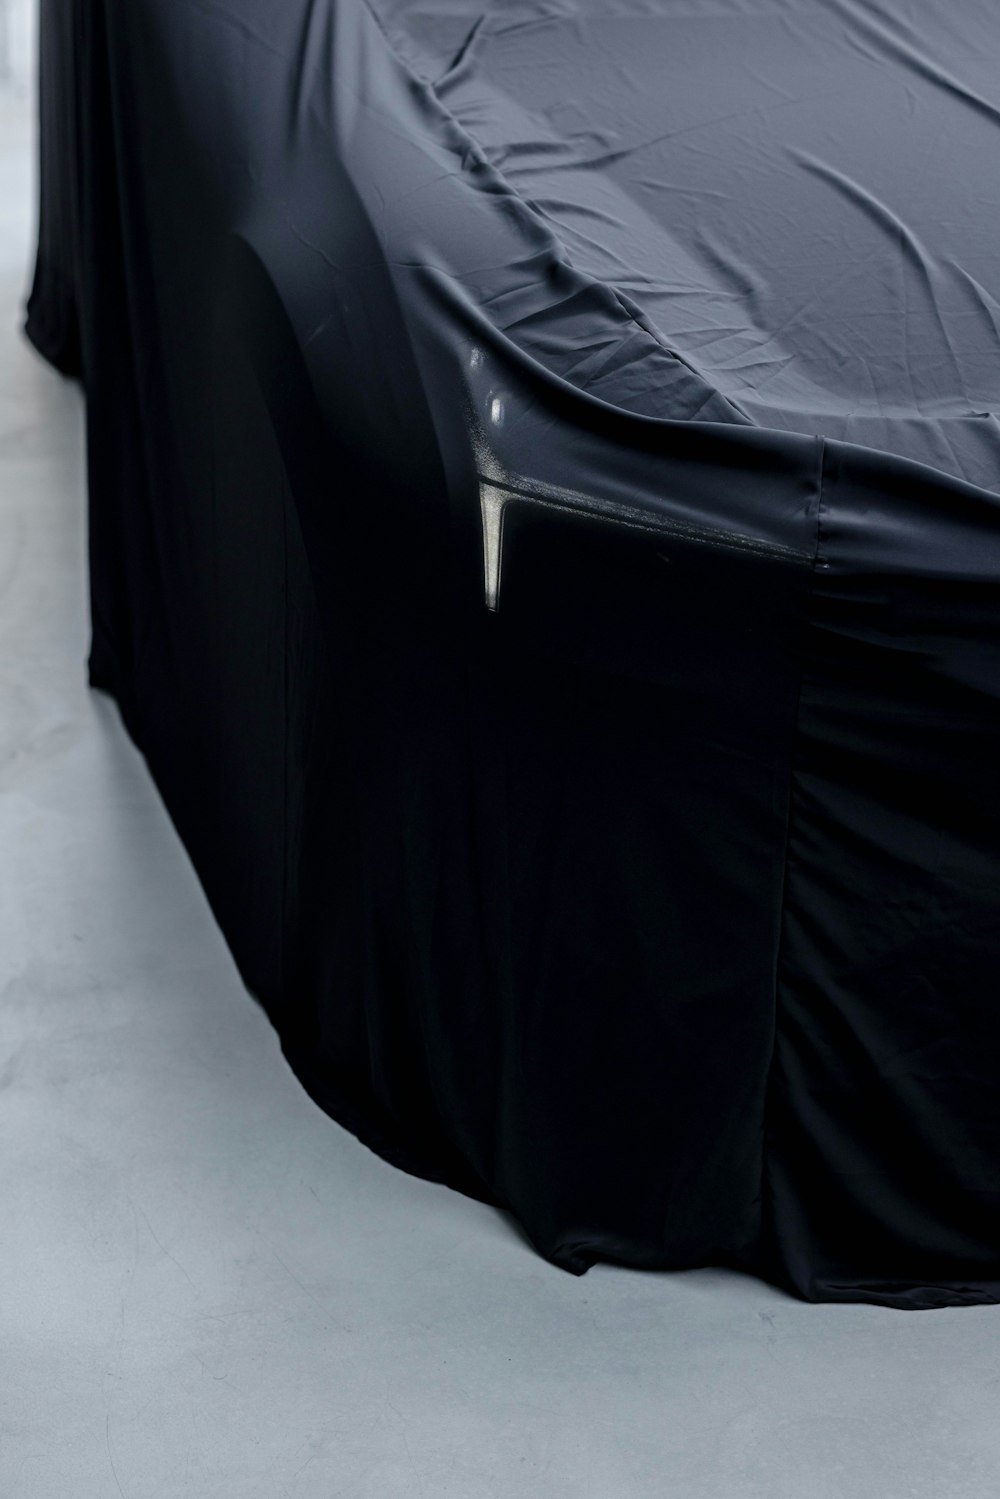 une voiture recouverte d’une housse noire posée sur un plancher blanc